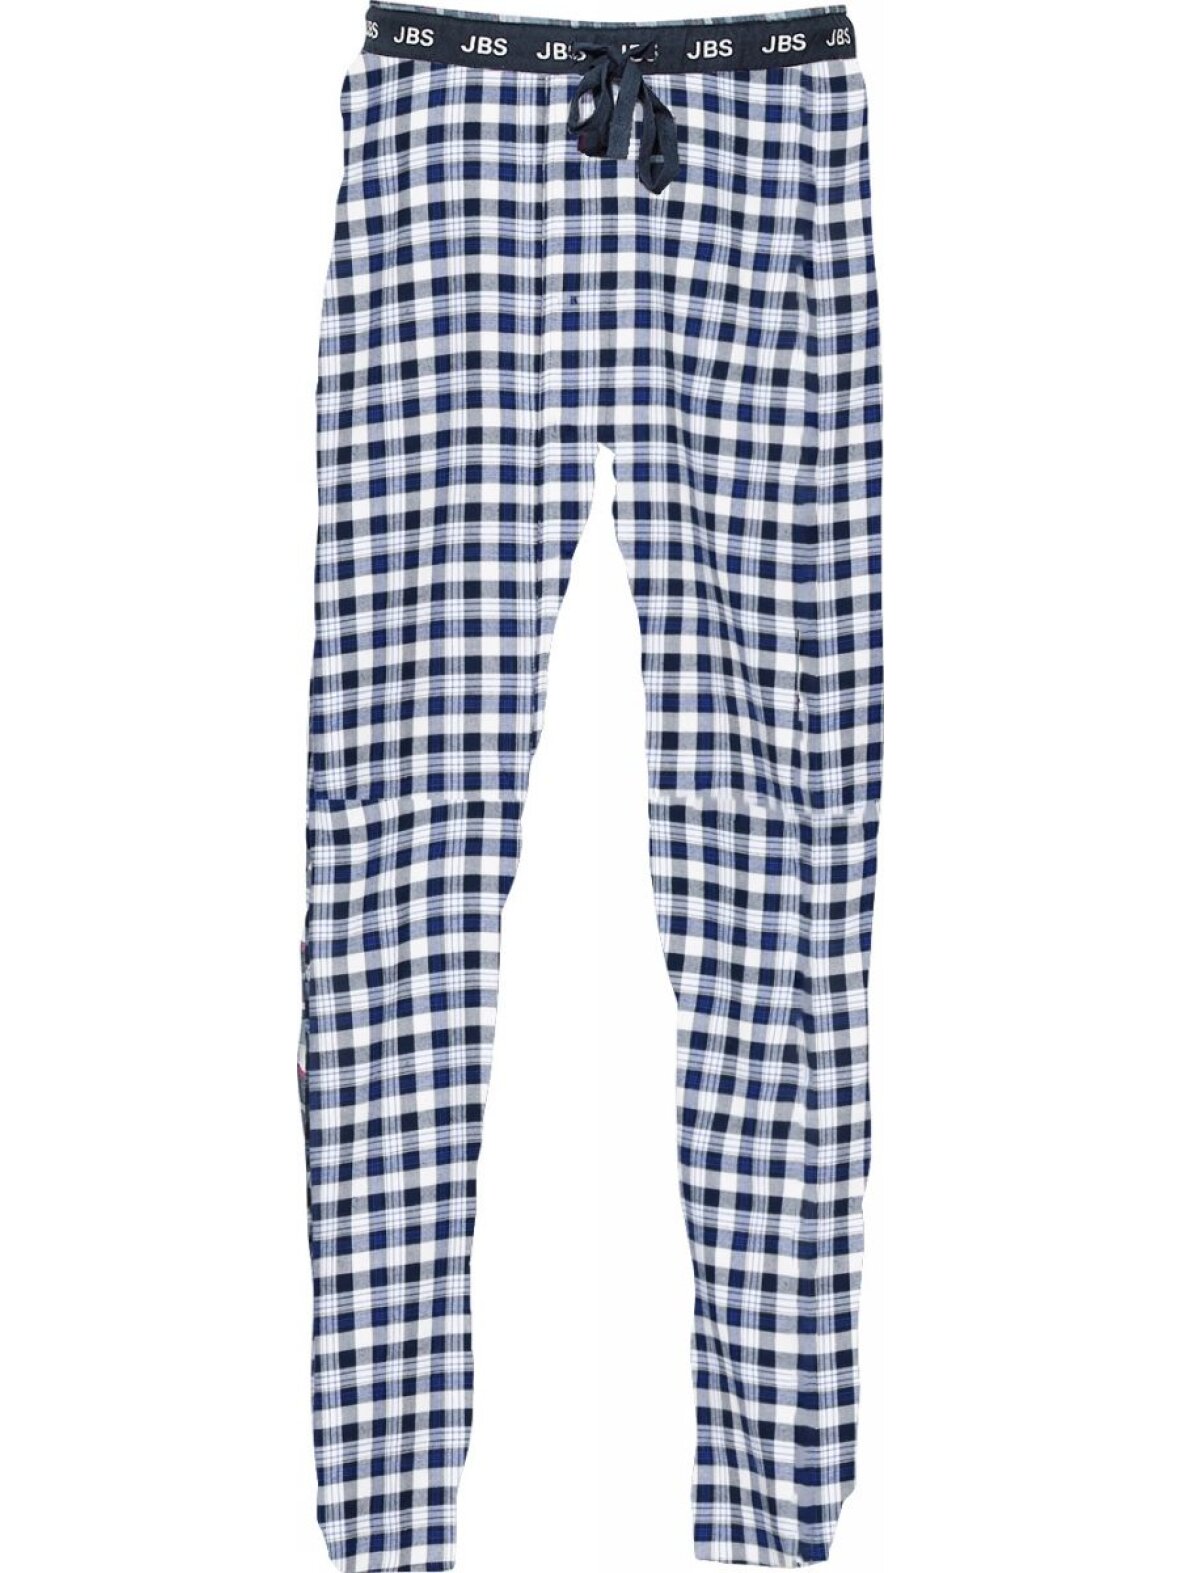 CC Christensen Pyjamasbukser fra JBS